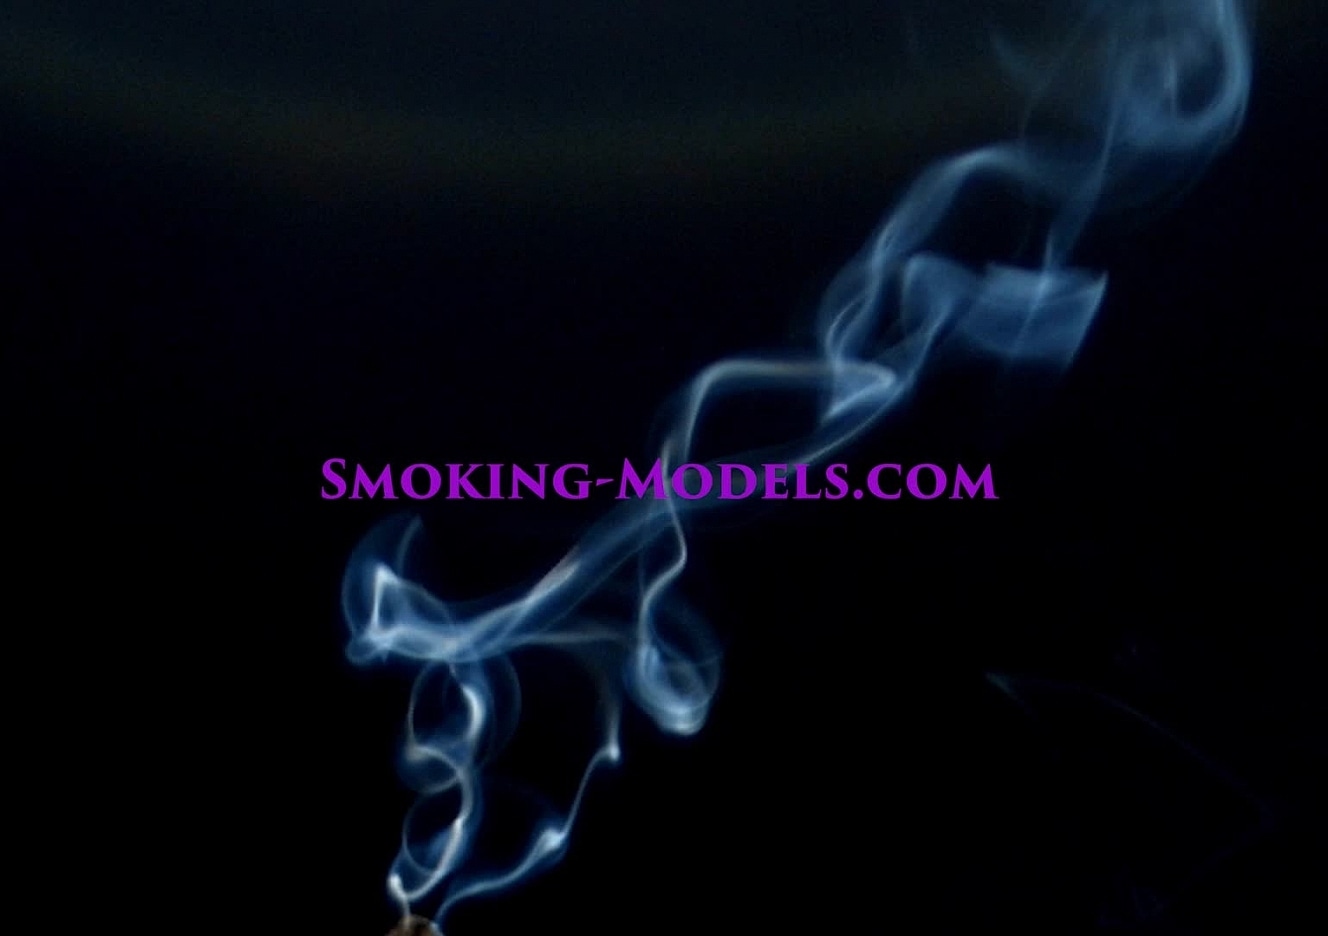 content/SMOKINGM-V-3019/0.jpg